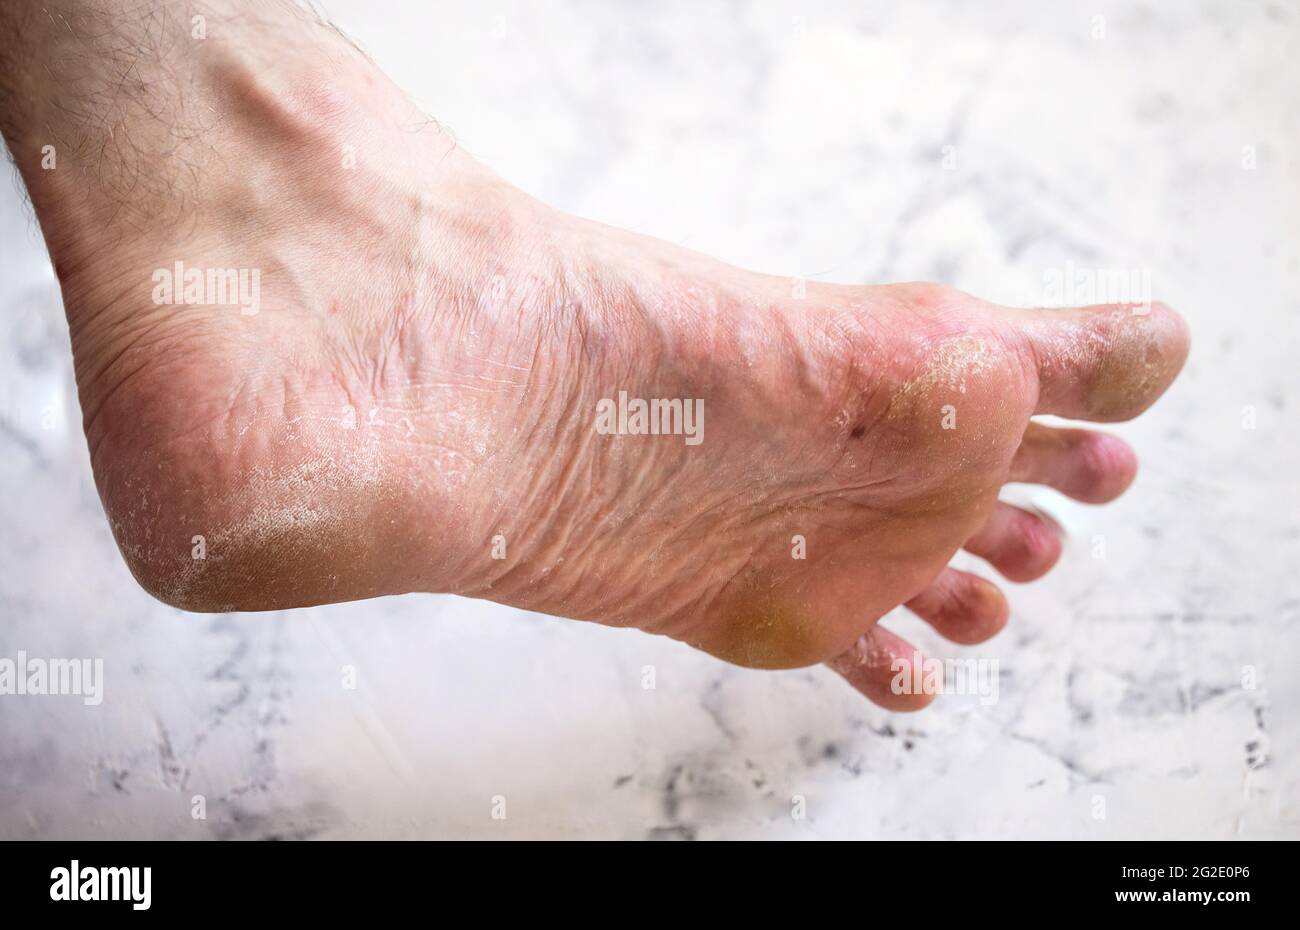 La malattia sulla gamba dell'uomo. Piede asciutto. Foto Stock